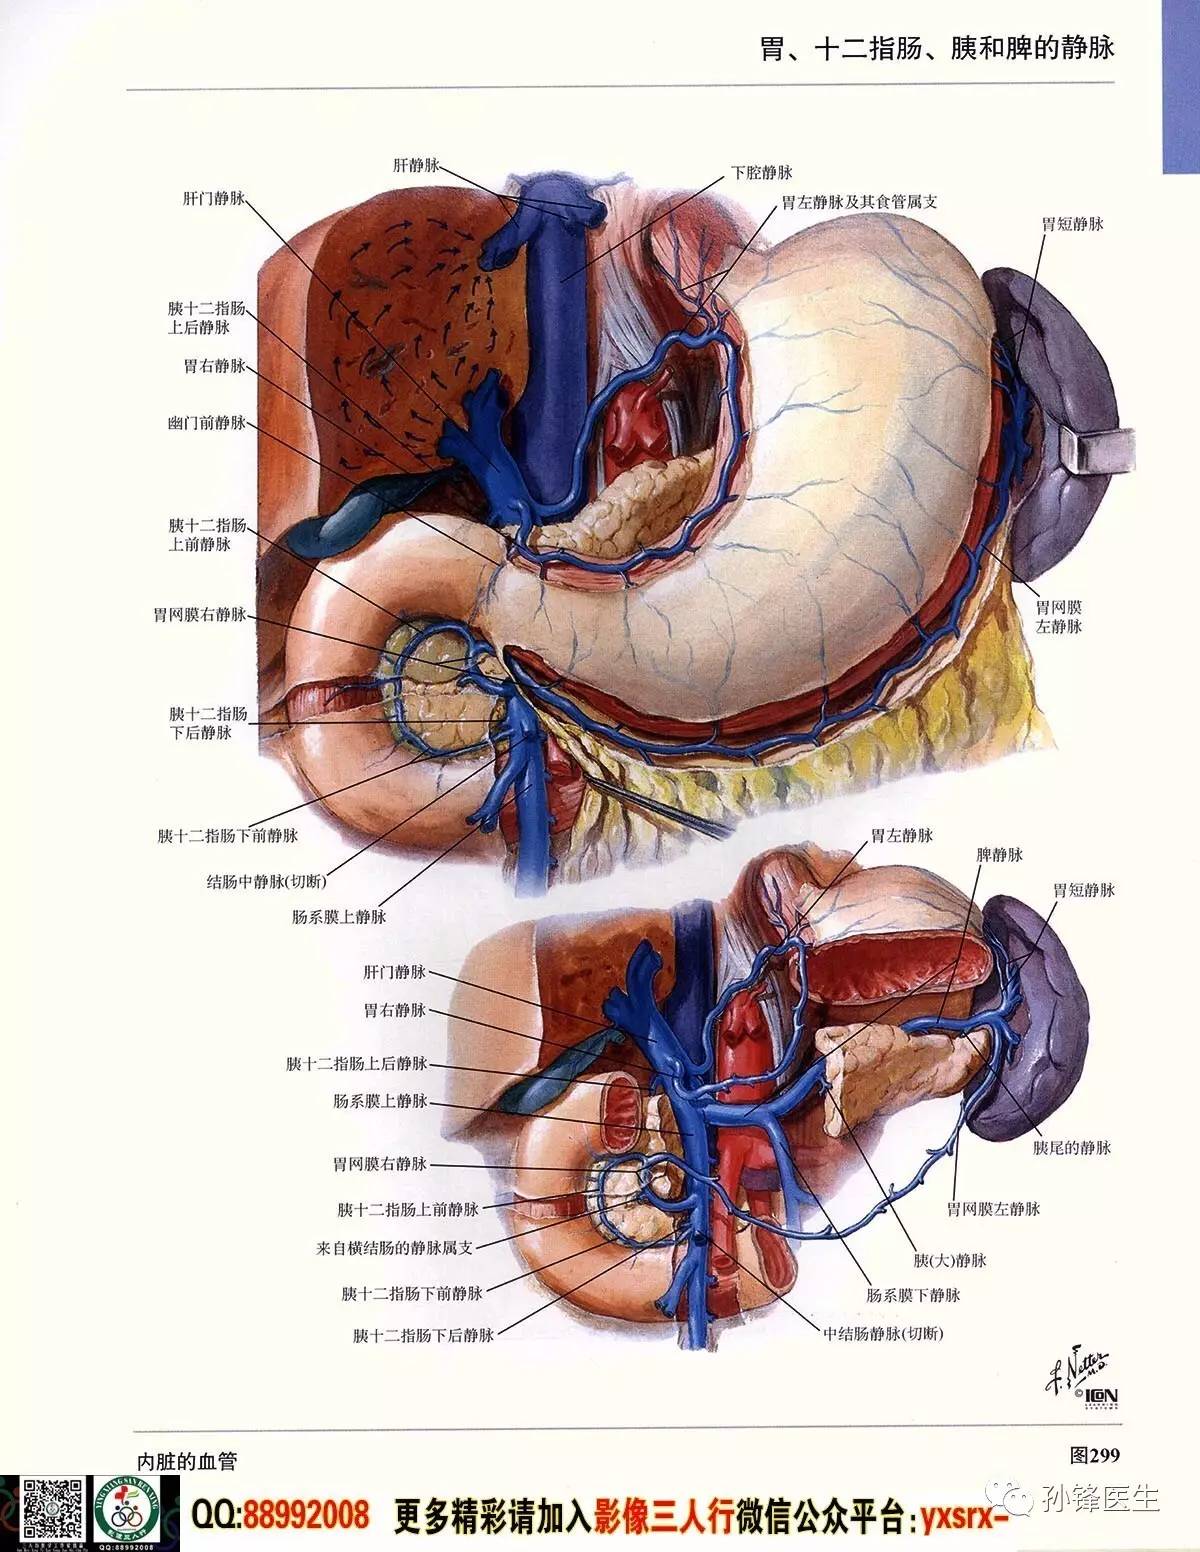 医学干货超高清的奈特人体解剖彩色图谱61腹部下